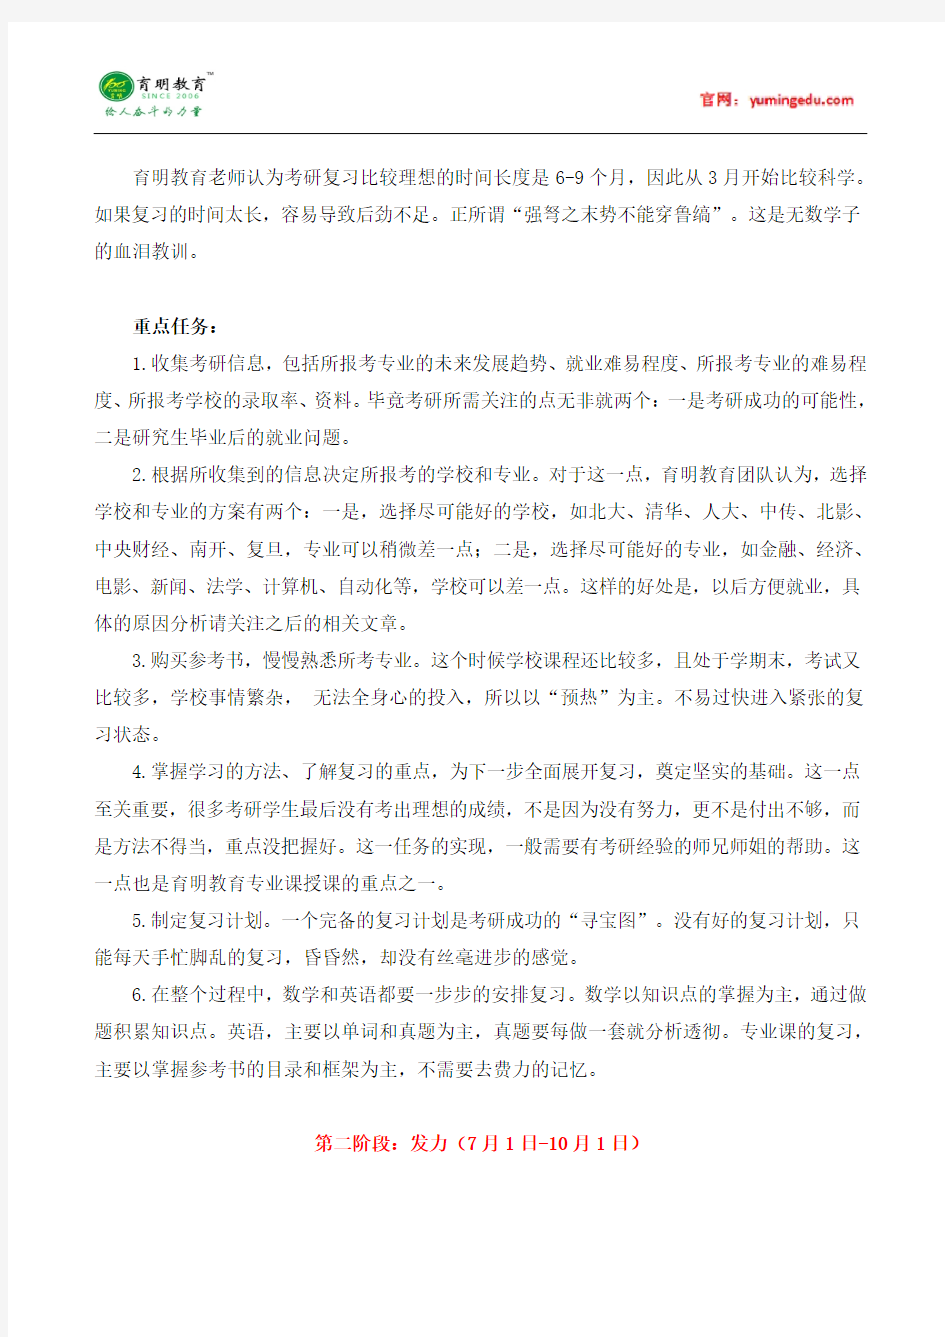 华南师范大学汉语国际教育硕士参考书-专业目录-分数线-考研笔记一百二十二